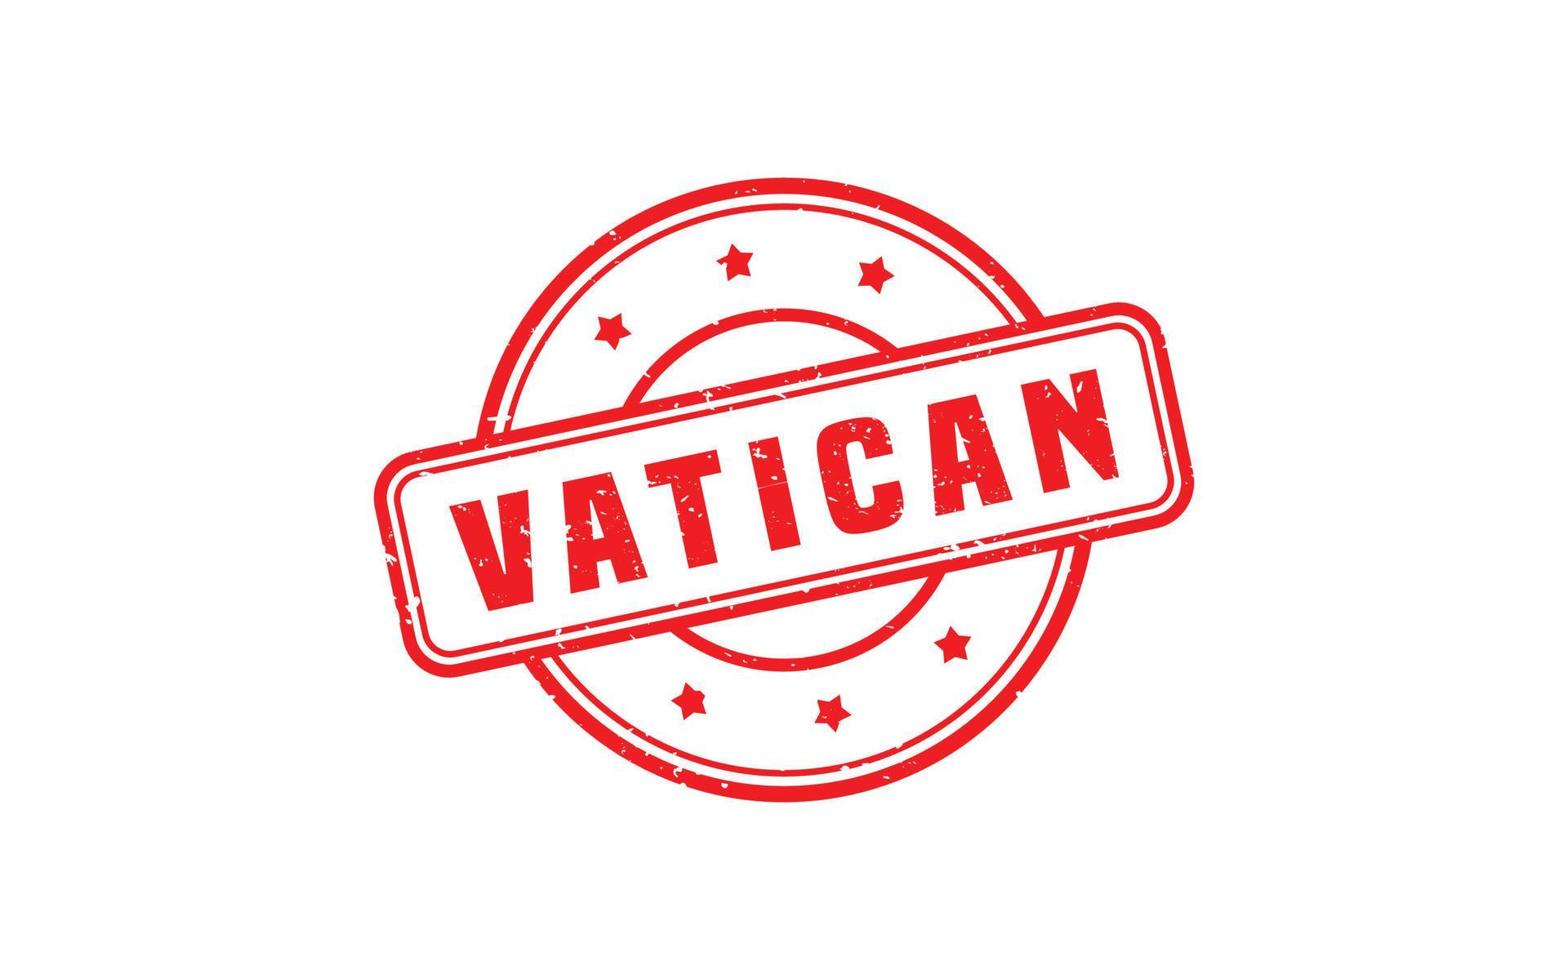 Vaticaan rubber postzegel met grunge stijl Aan wit achtergrond vector